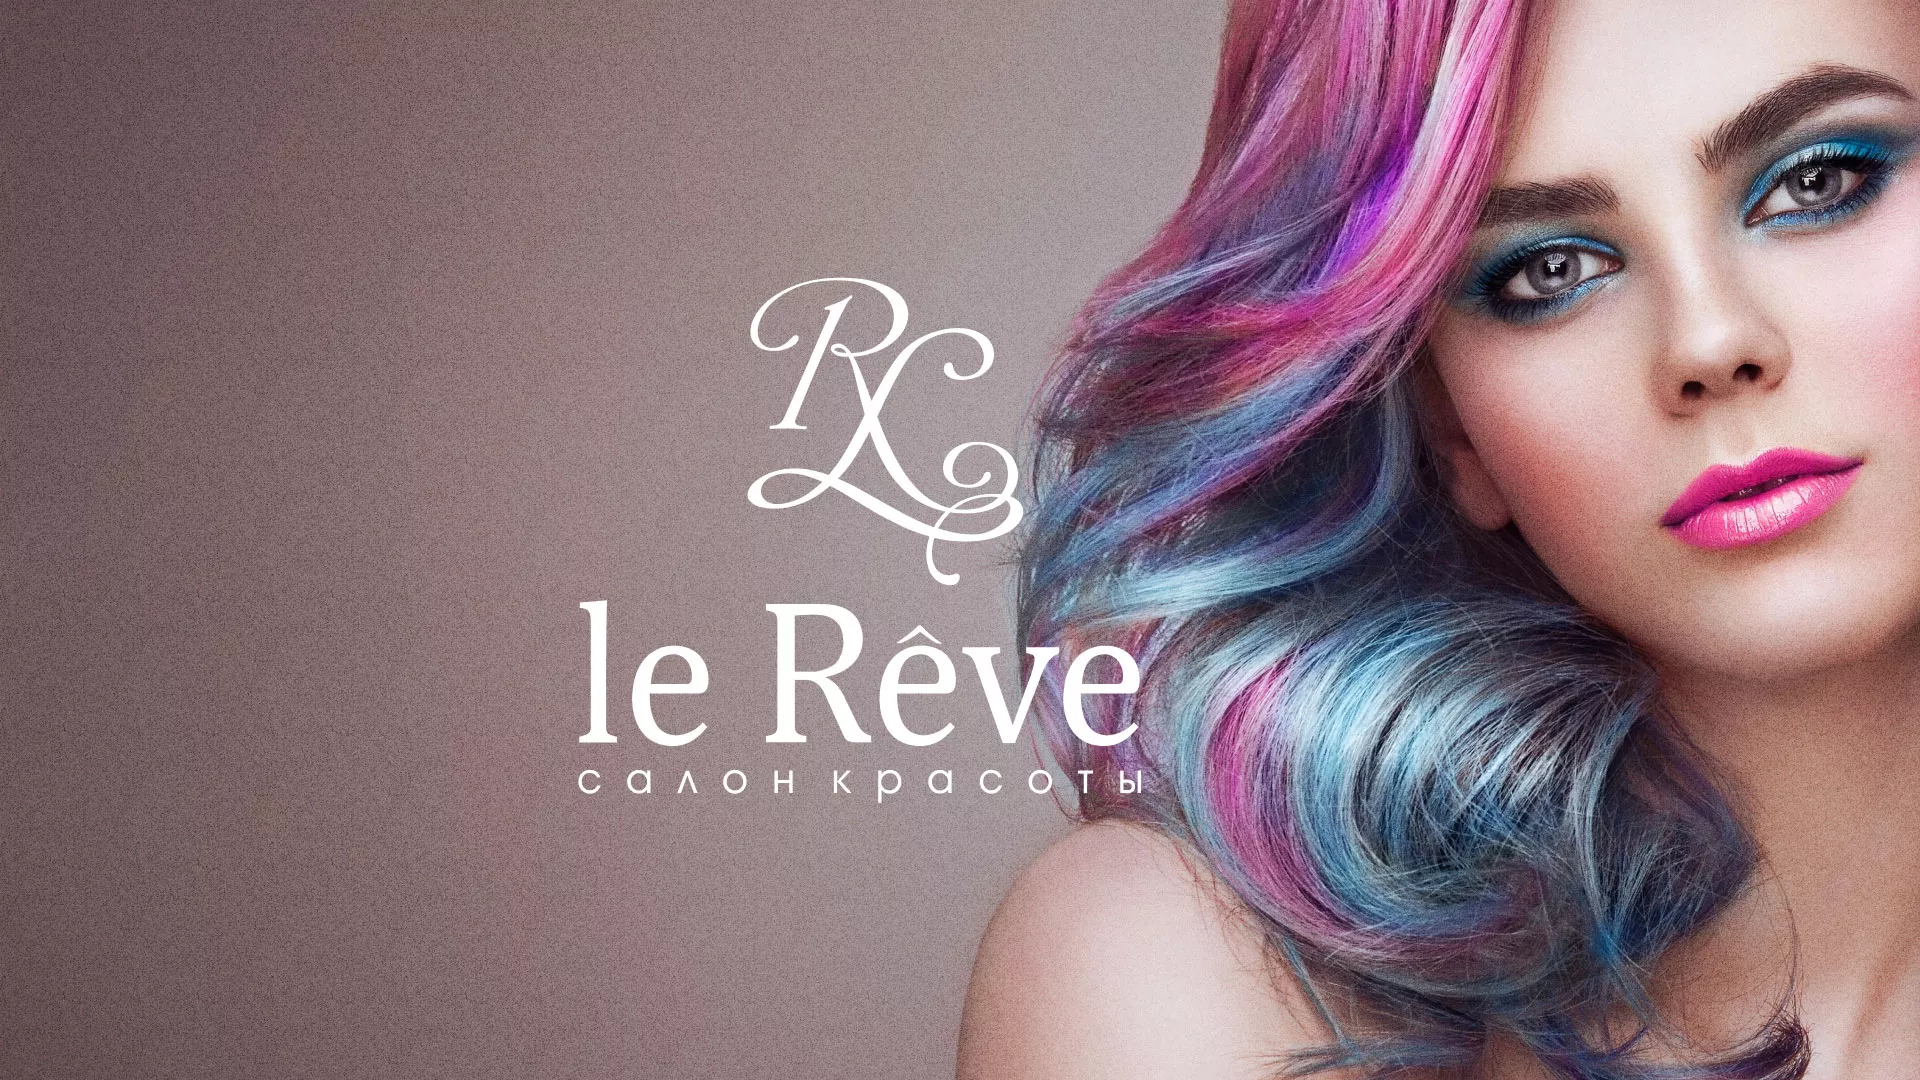 Создание сайта для салона красоты «Le Reve» в Ярославле